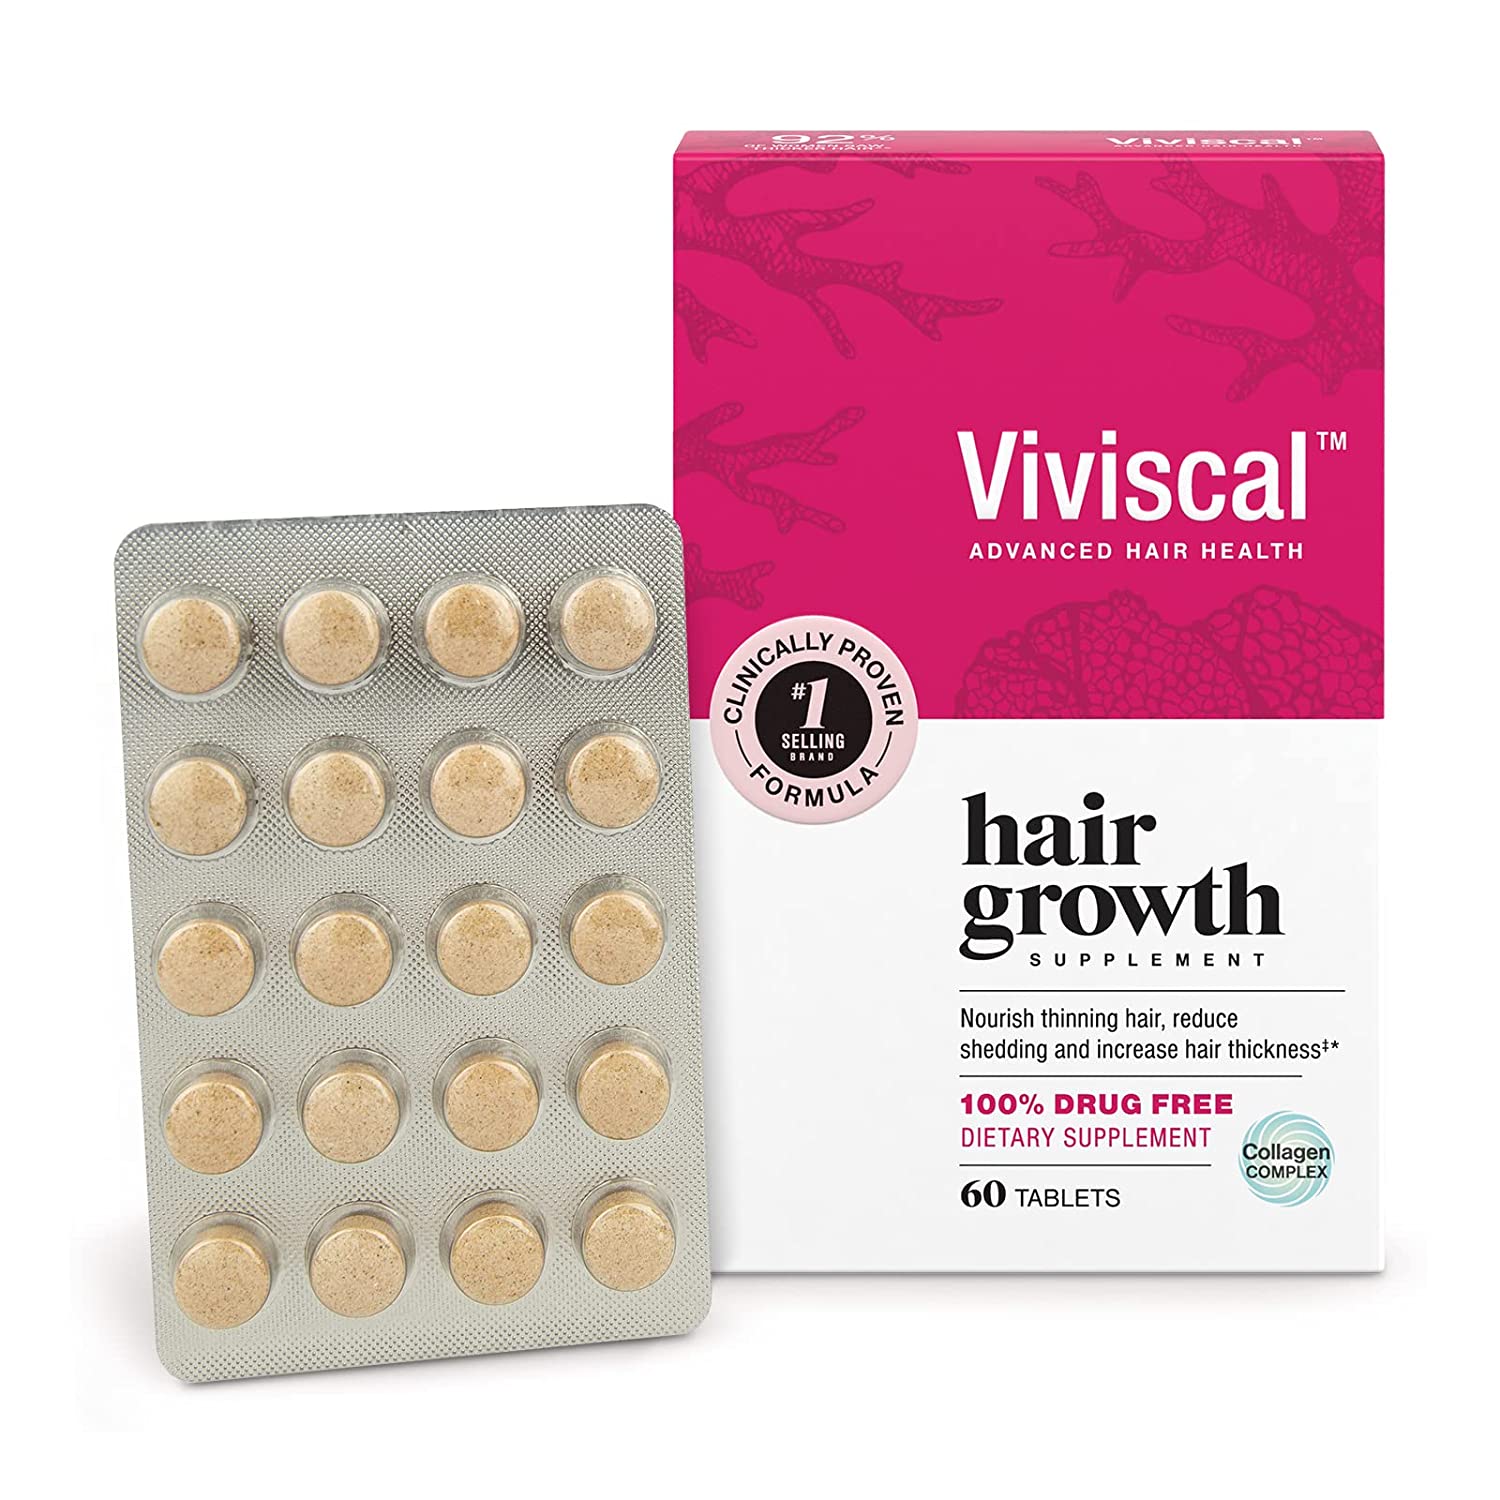  6. Viviscal Hair Growth Supplements for Women, Best Supplement, Runner-Up 